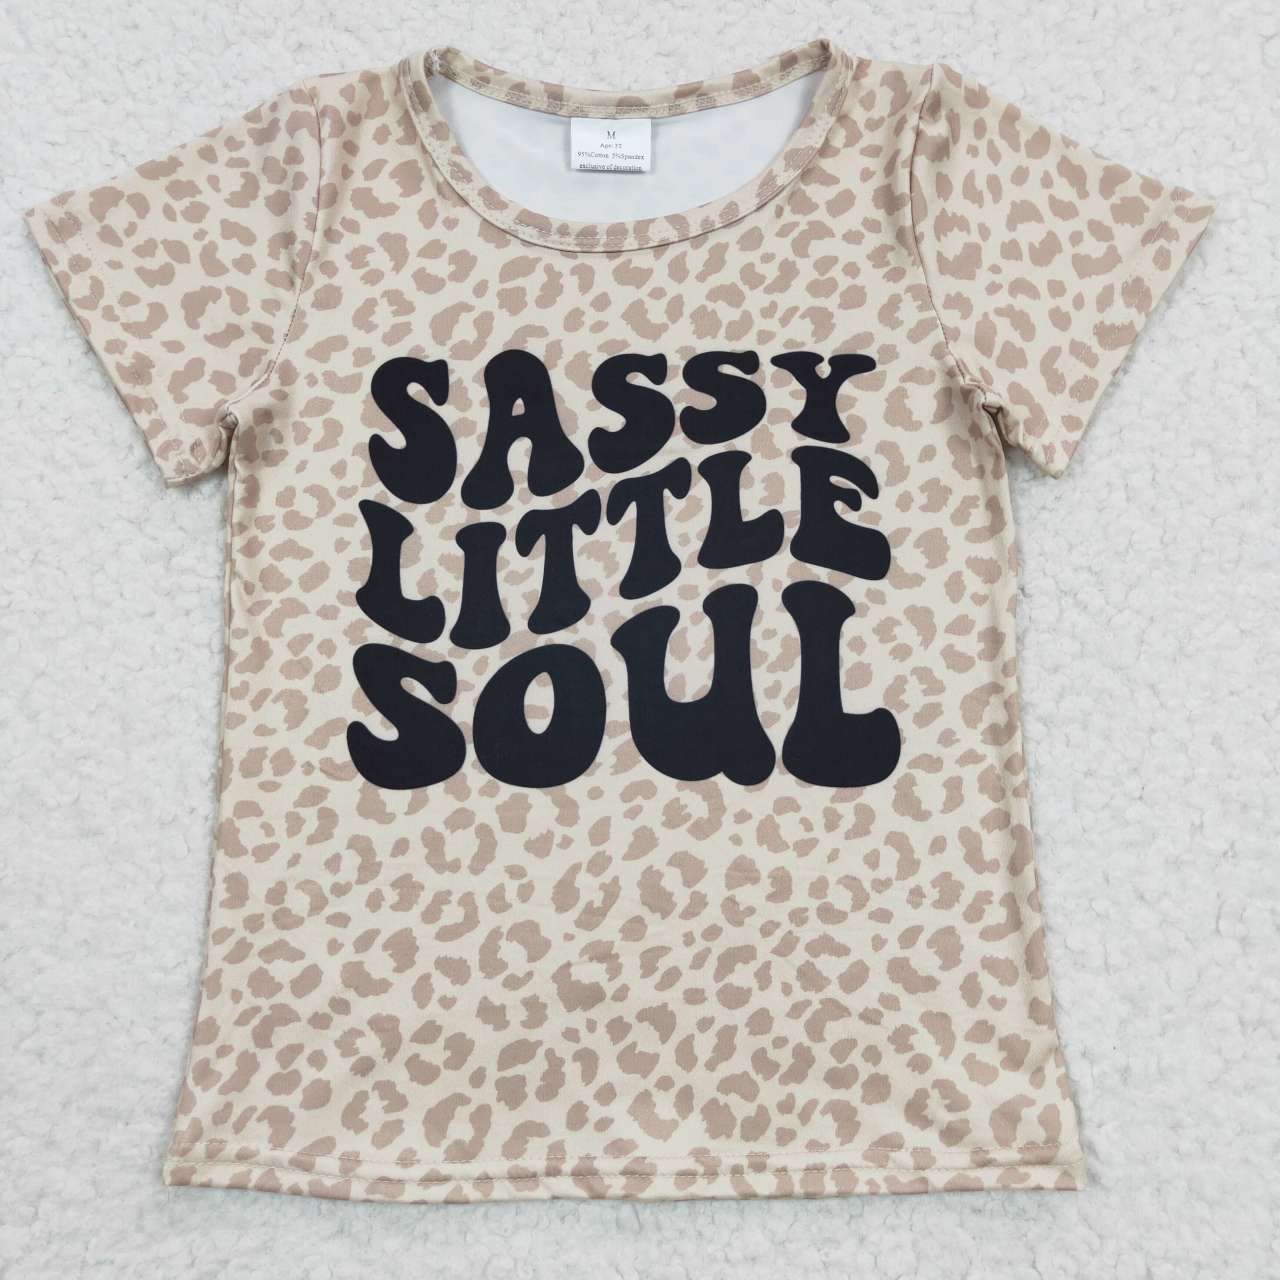 sassy little soul girl leopard tee t-shirt